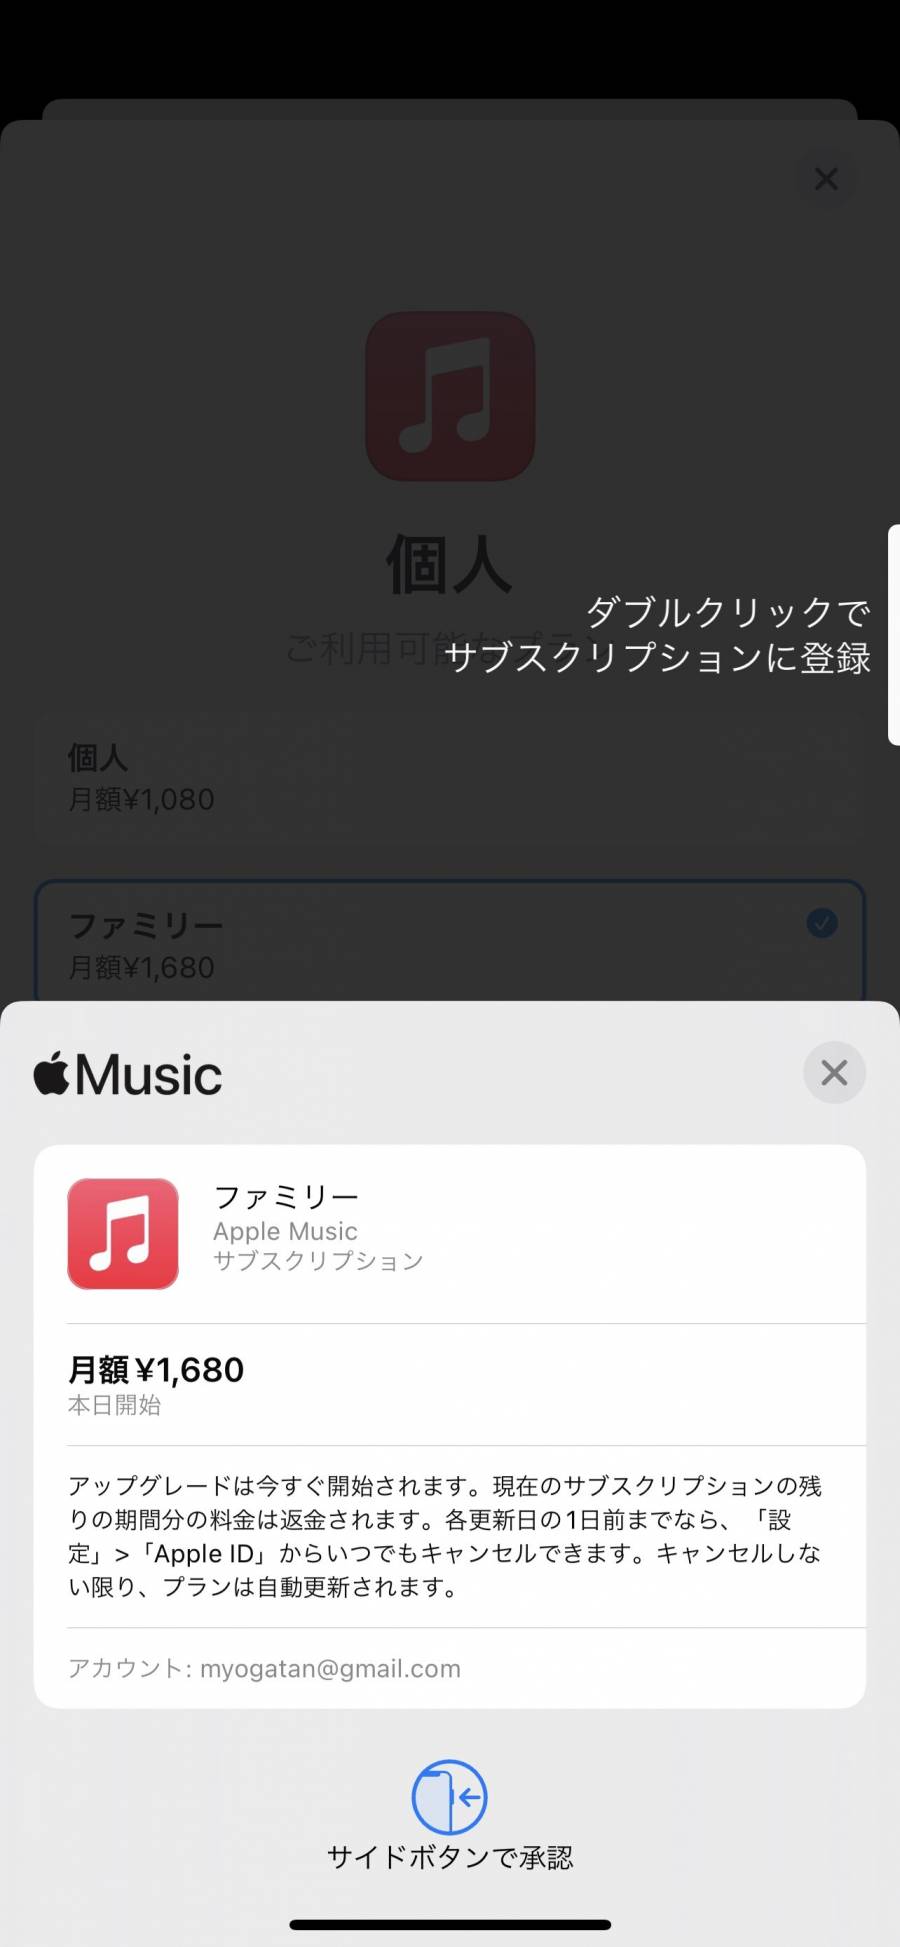 Apple Music ファミリープラン